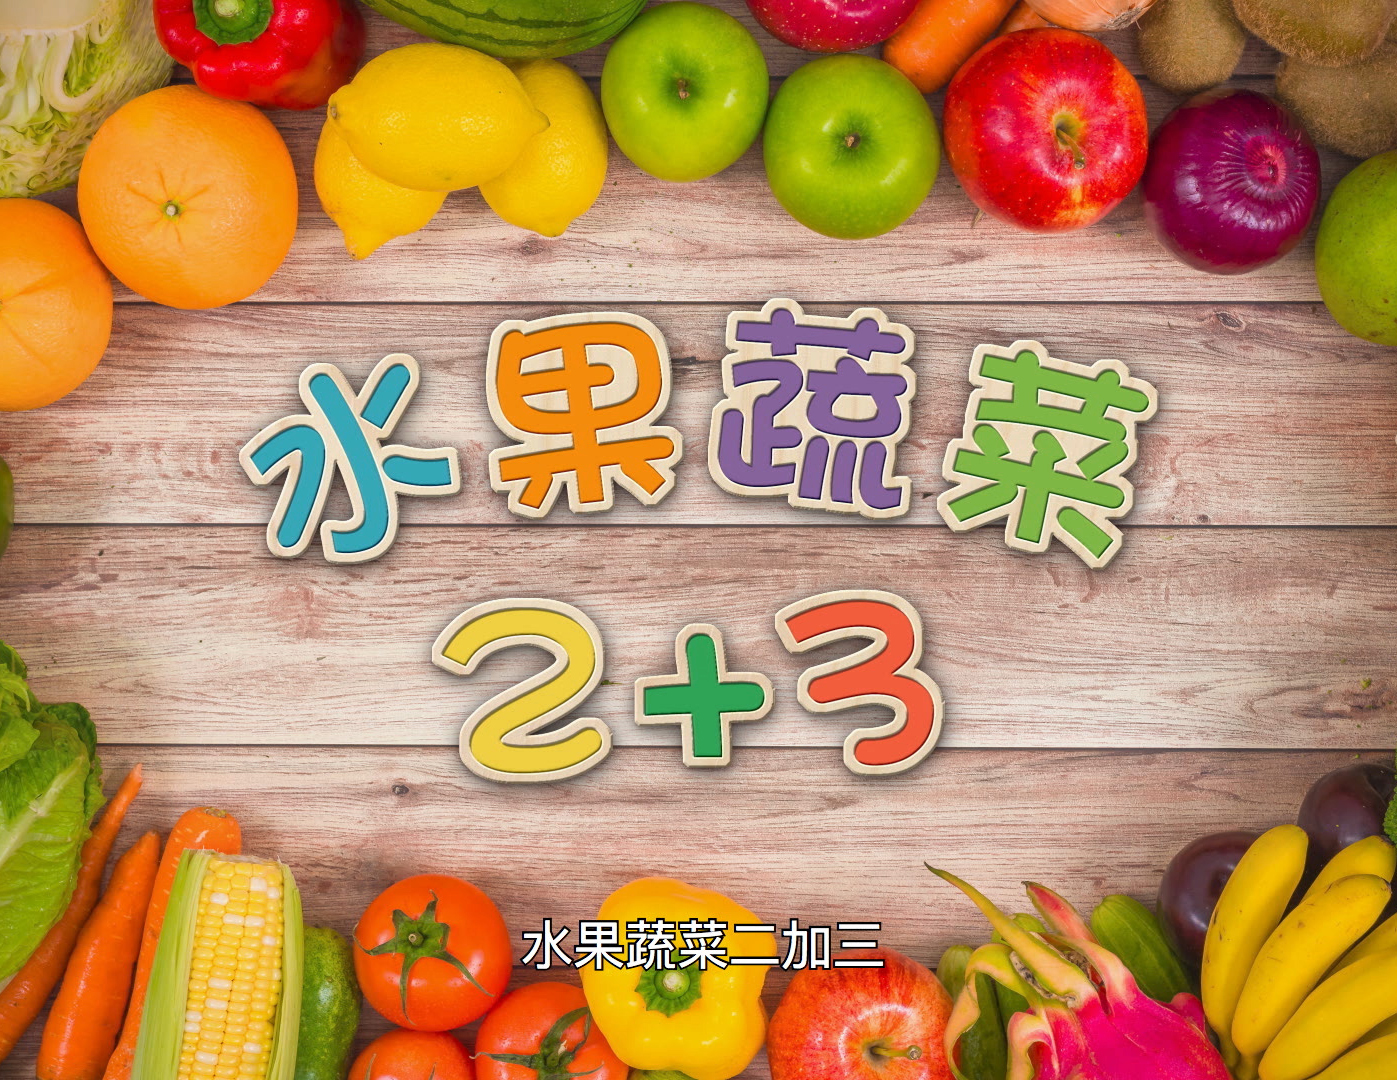 日日水果蔬菜2+3